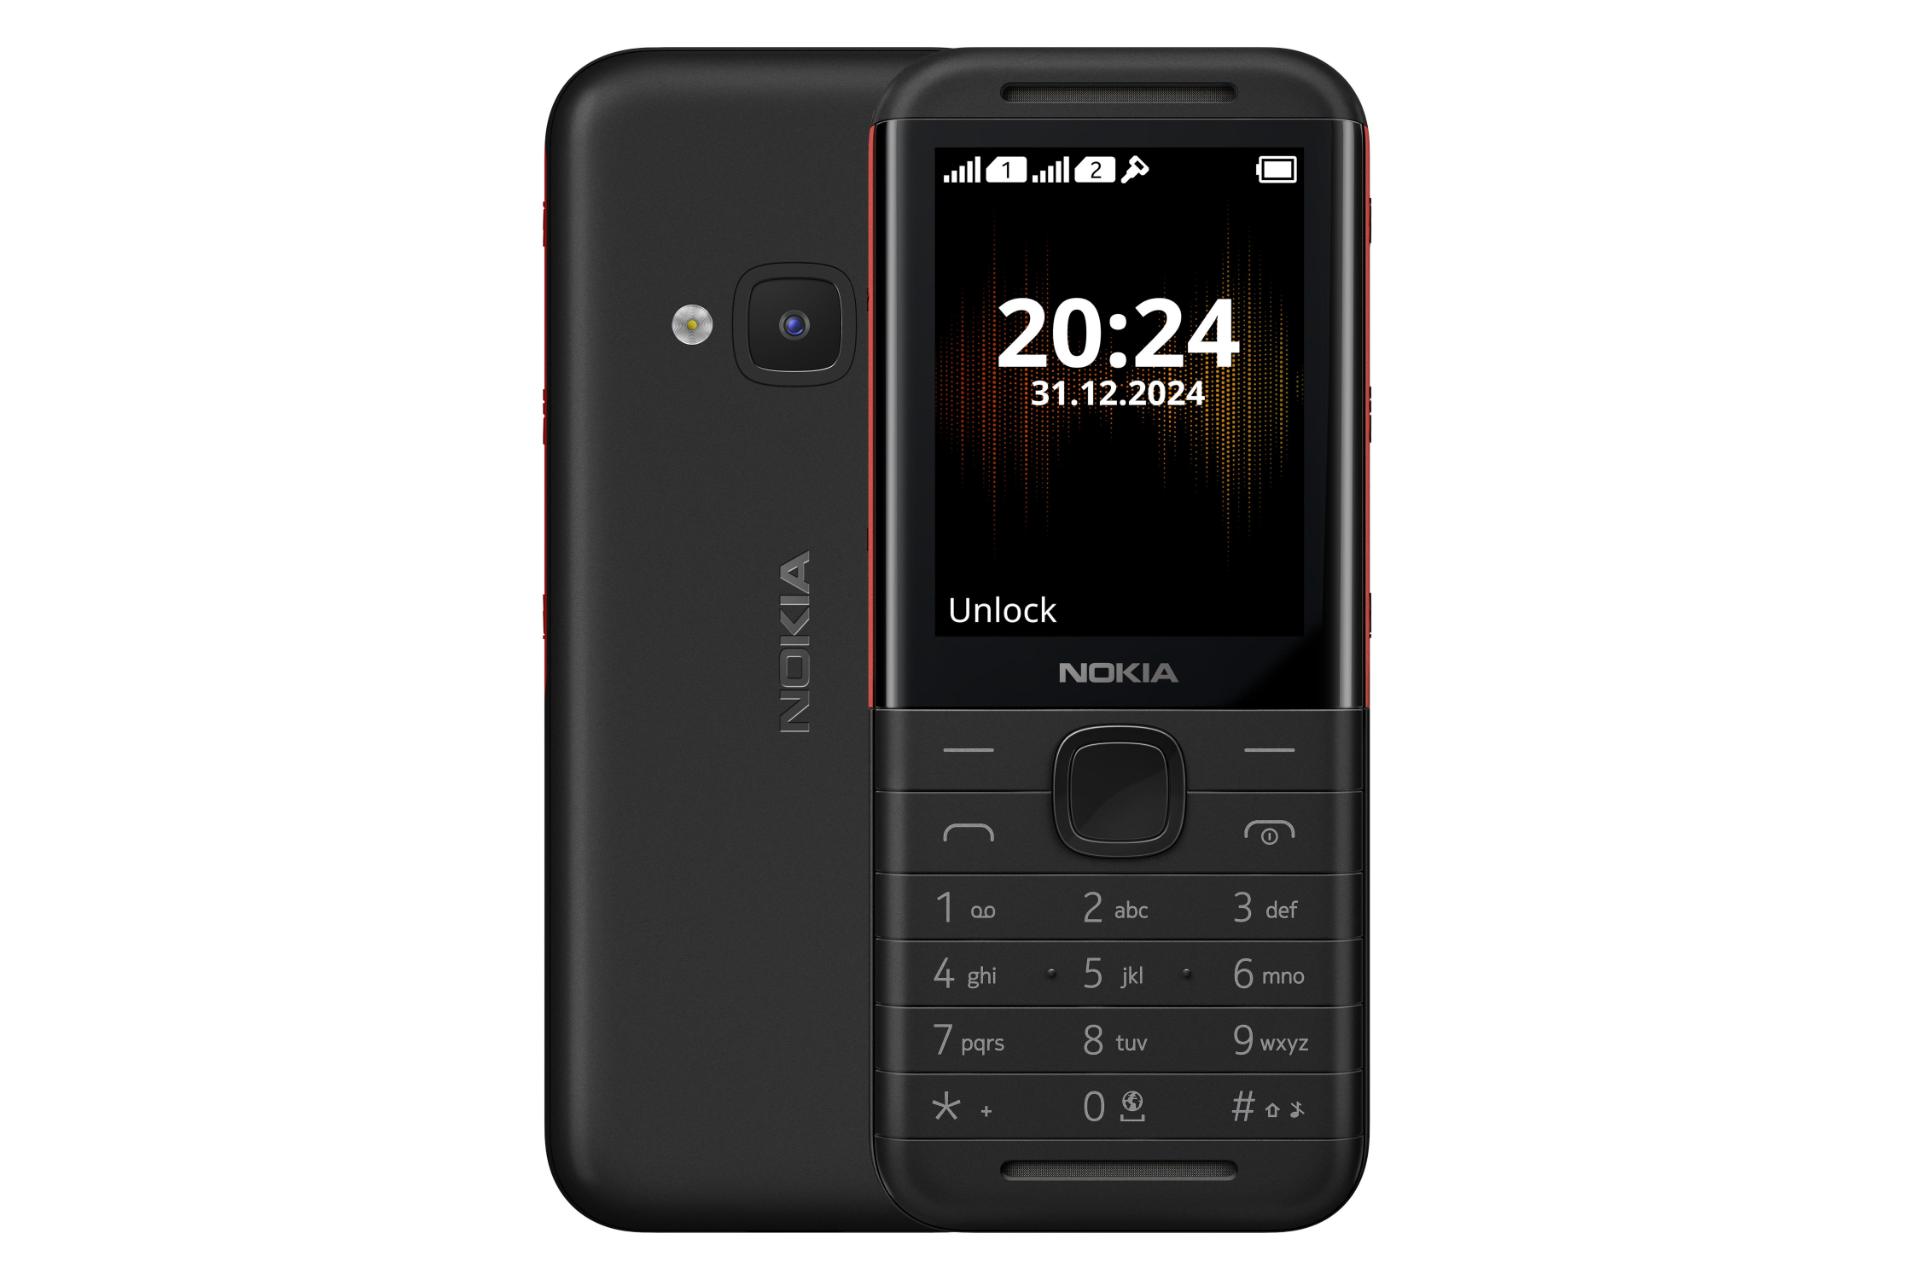 پنل جلو و پشت گوشی موبایل نوکیا 5310 نسخه 2024 مشکی و قرمز / Nokia 5310 2024